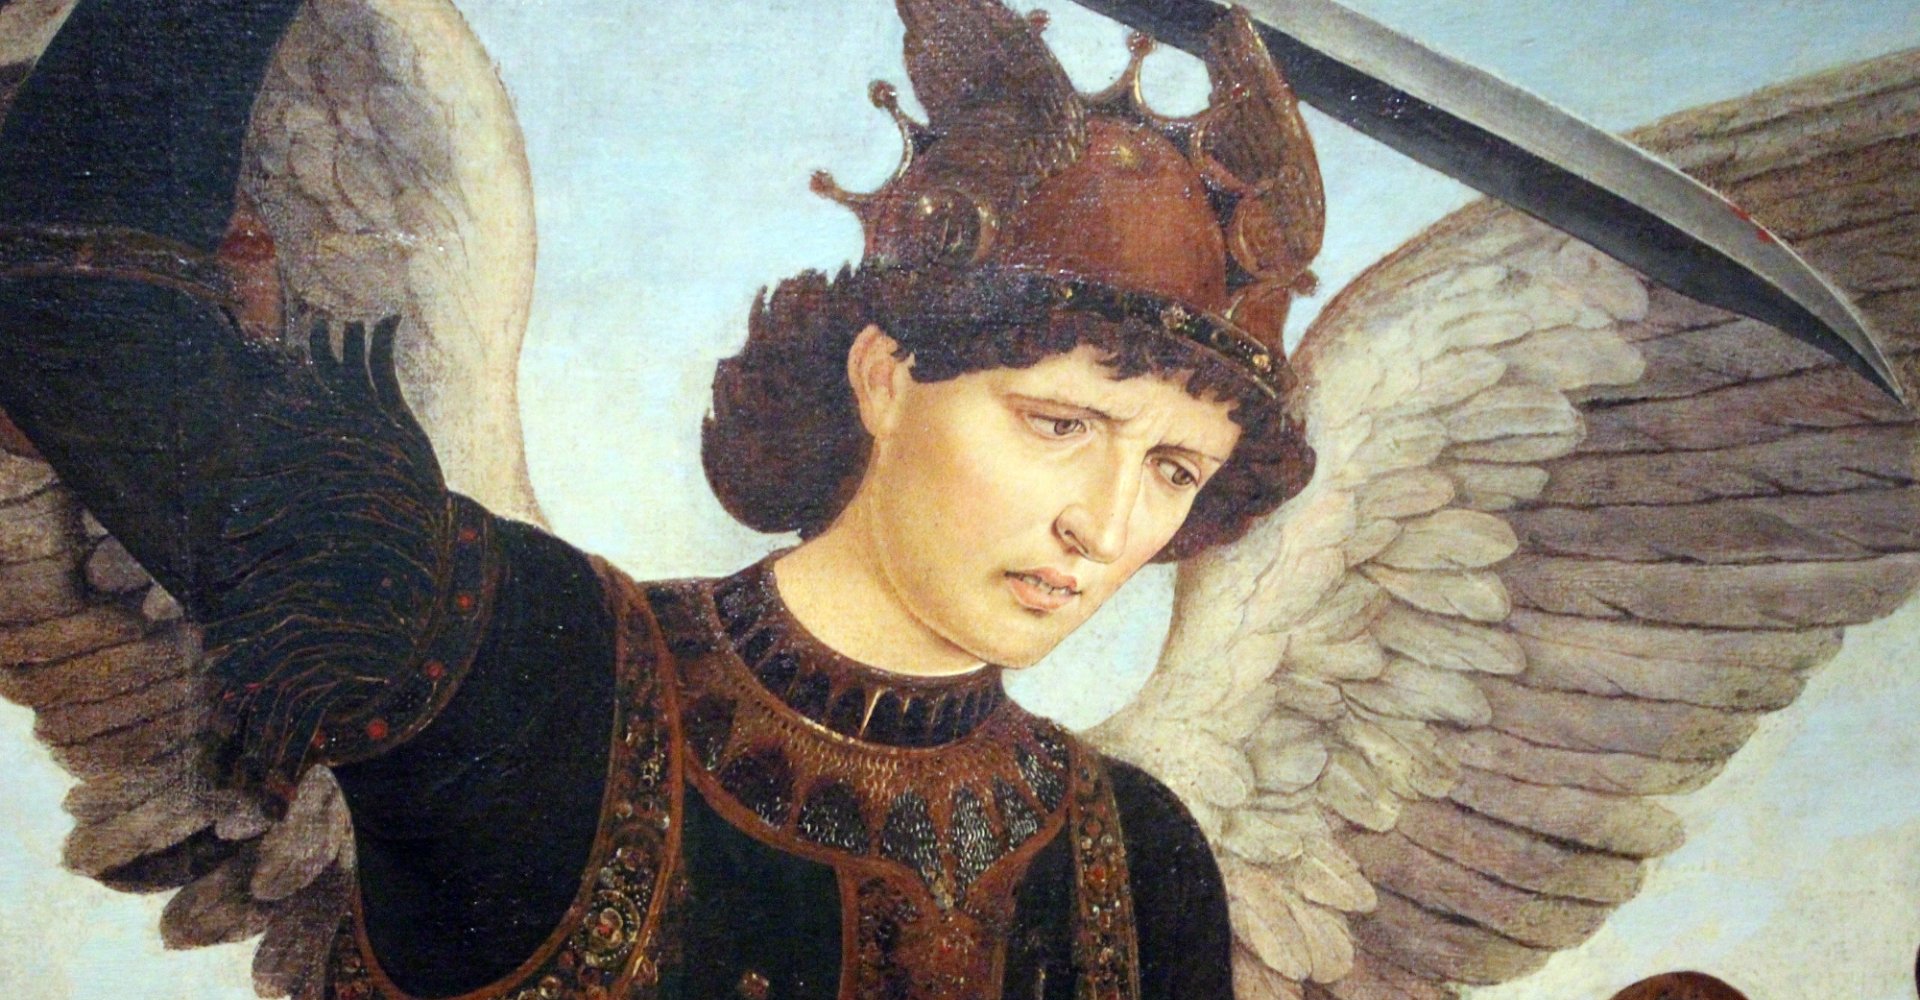 Piero del Pollaiolo, San Michele Arcangelo y el Dragón, detalle